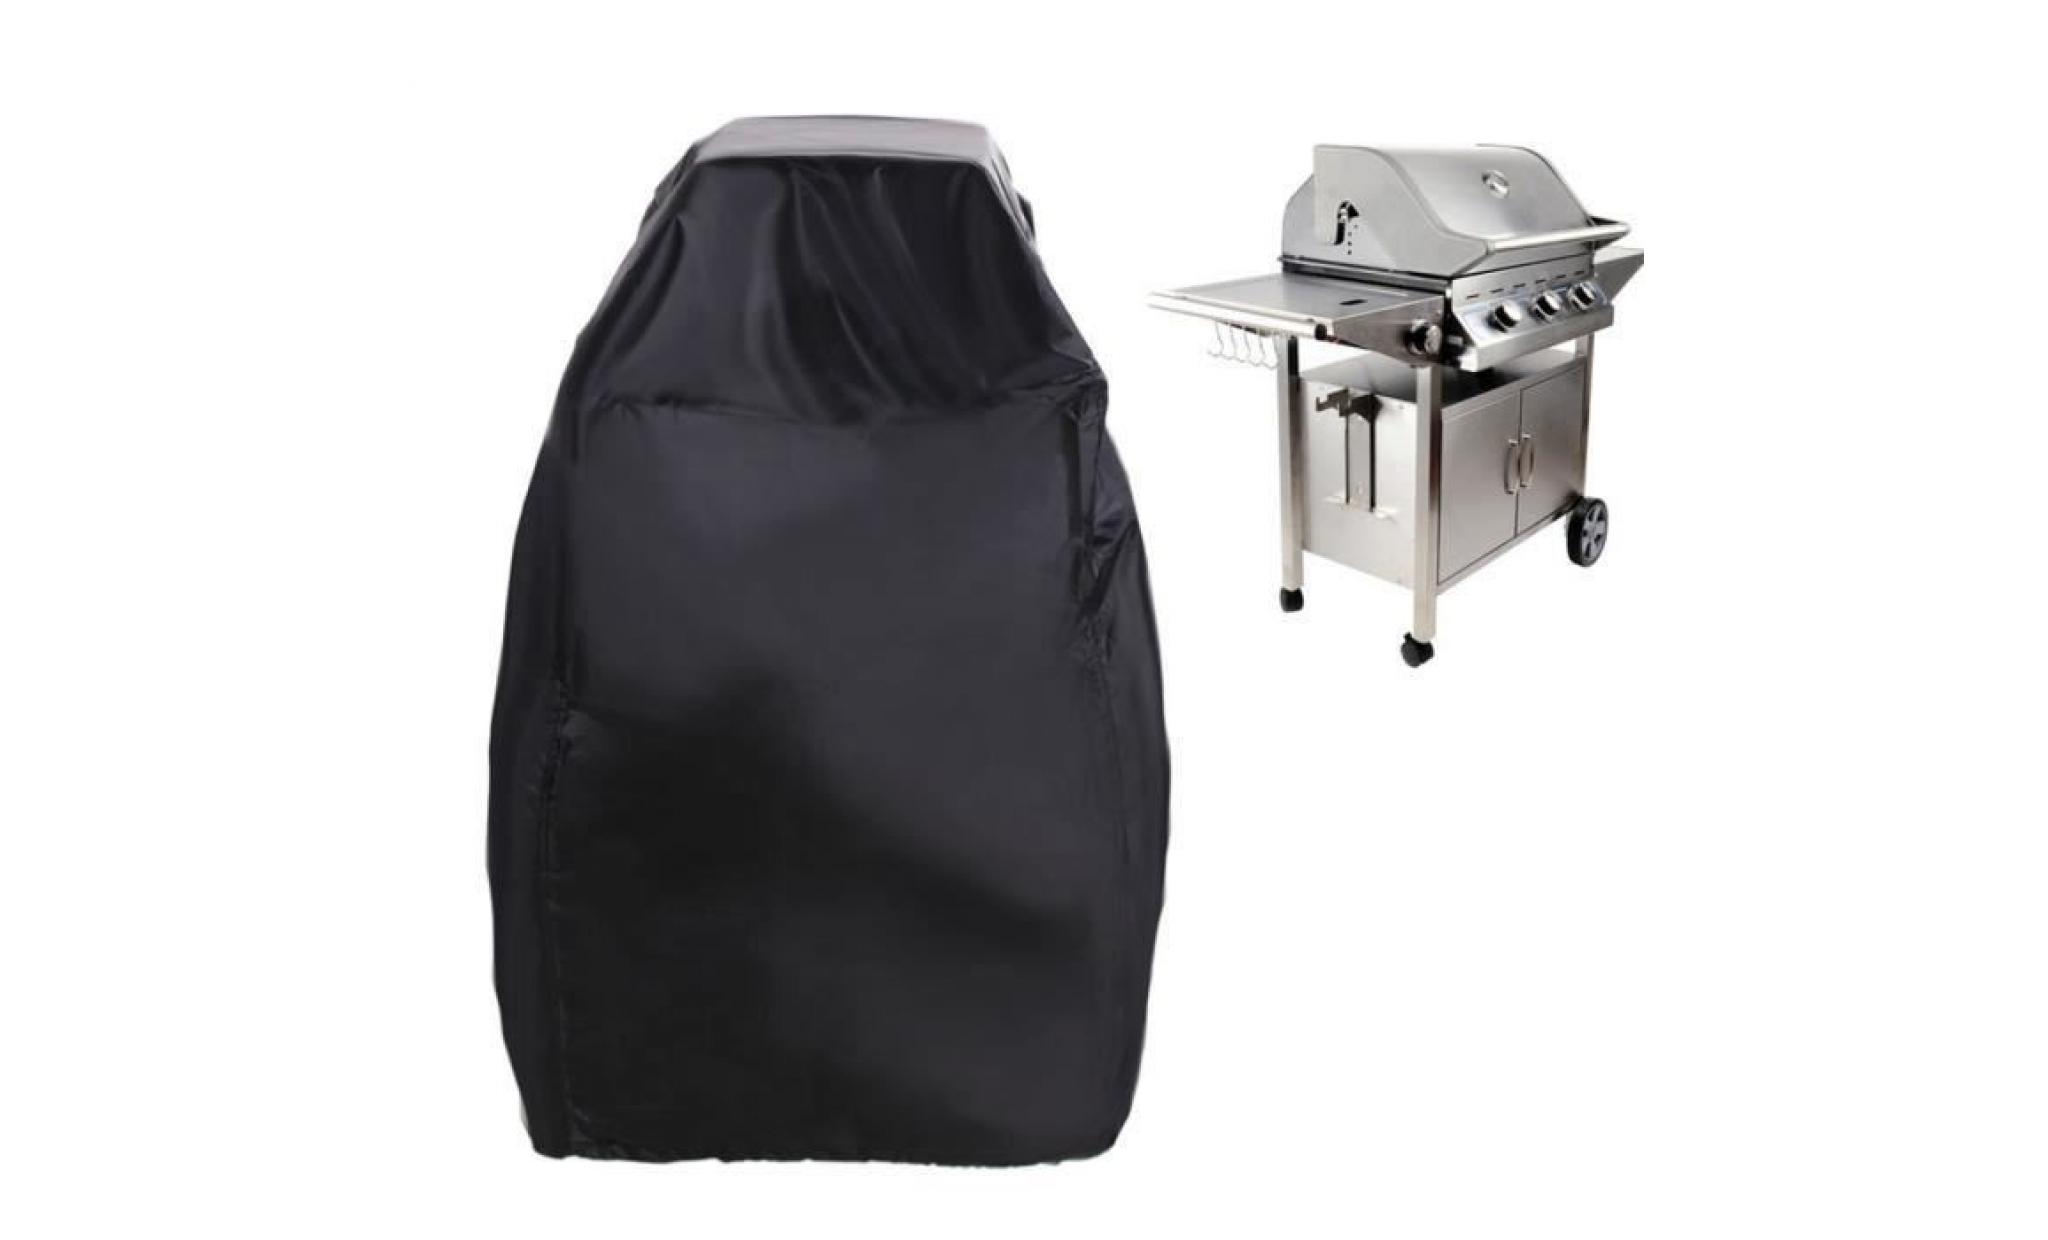 Nouveau housse bâche BBQ étanche extérieure robuste chariot barbecue Barbecue Grill couverture gaz Grill Protection noir pas cher